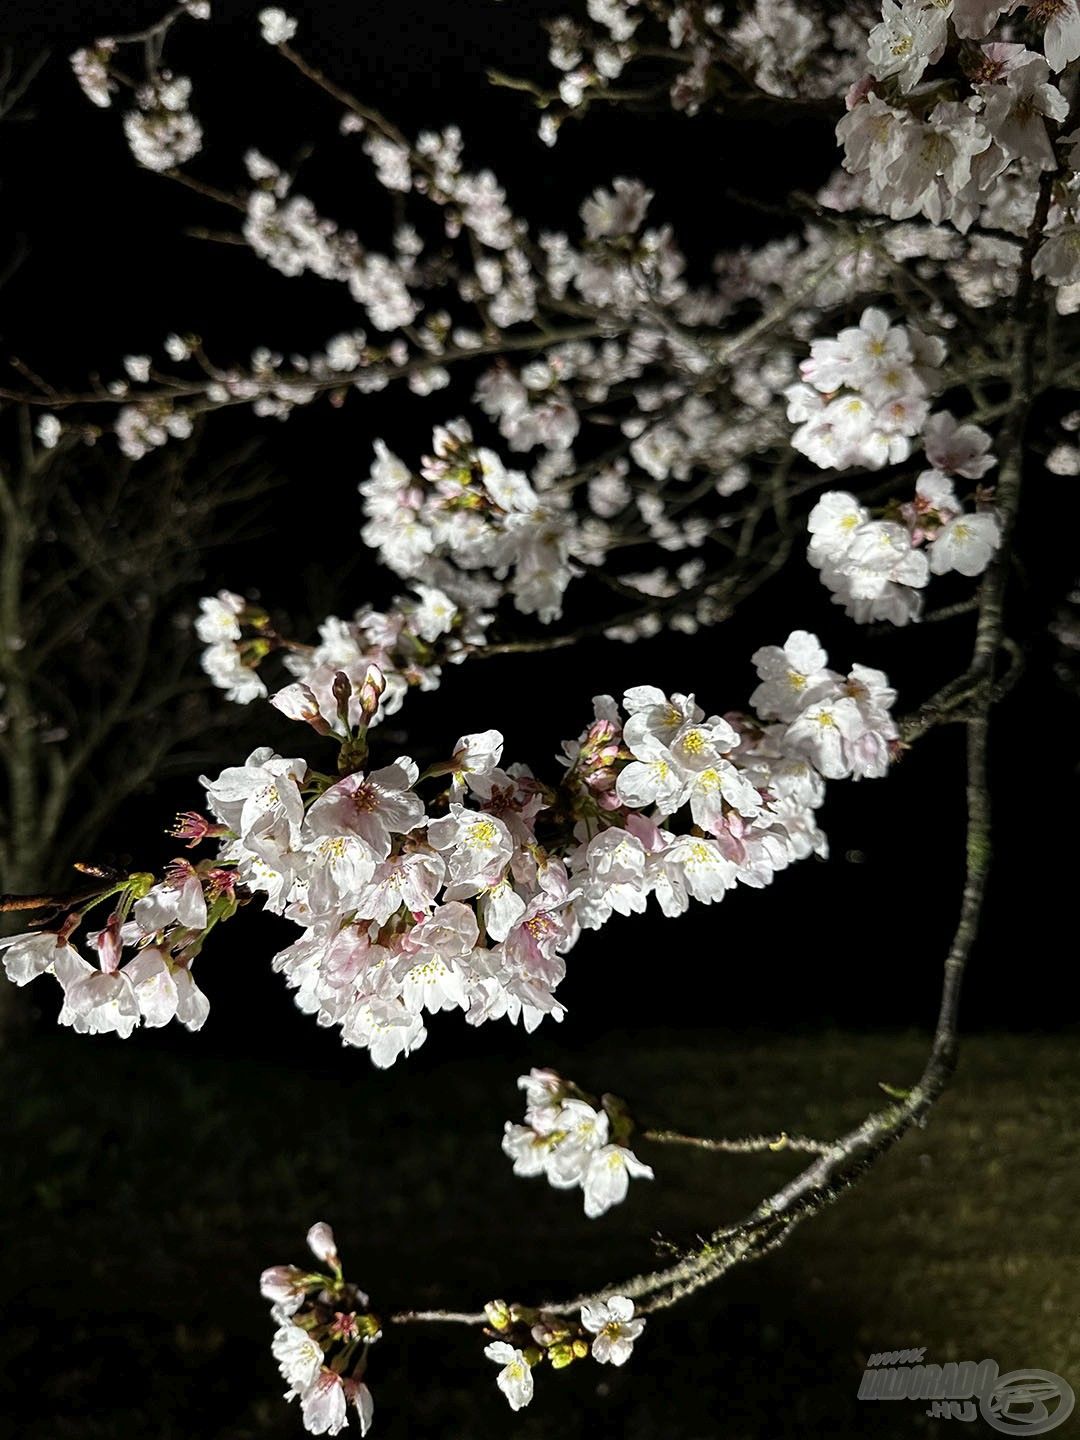 A legszebb virágzó fák éjszakai díszkivilágítást is kapnak